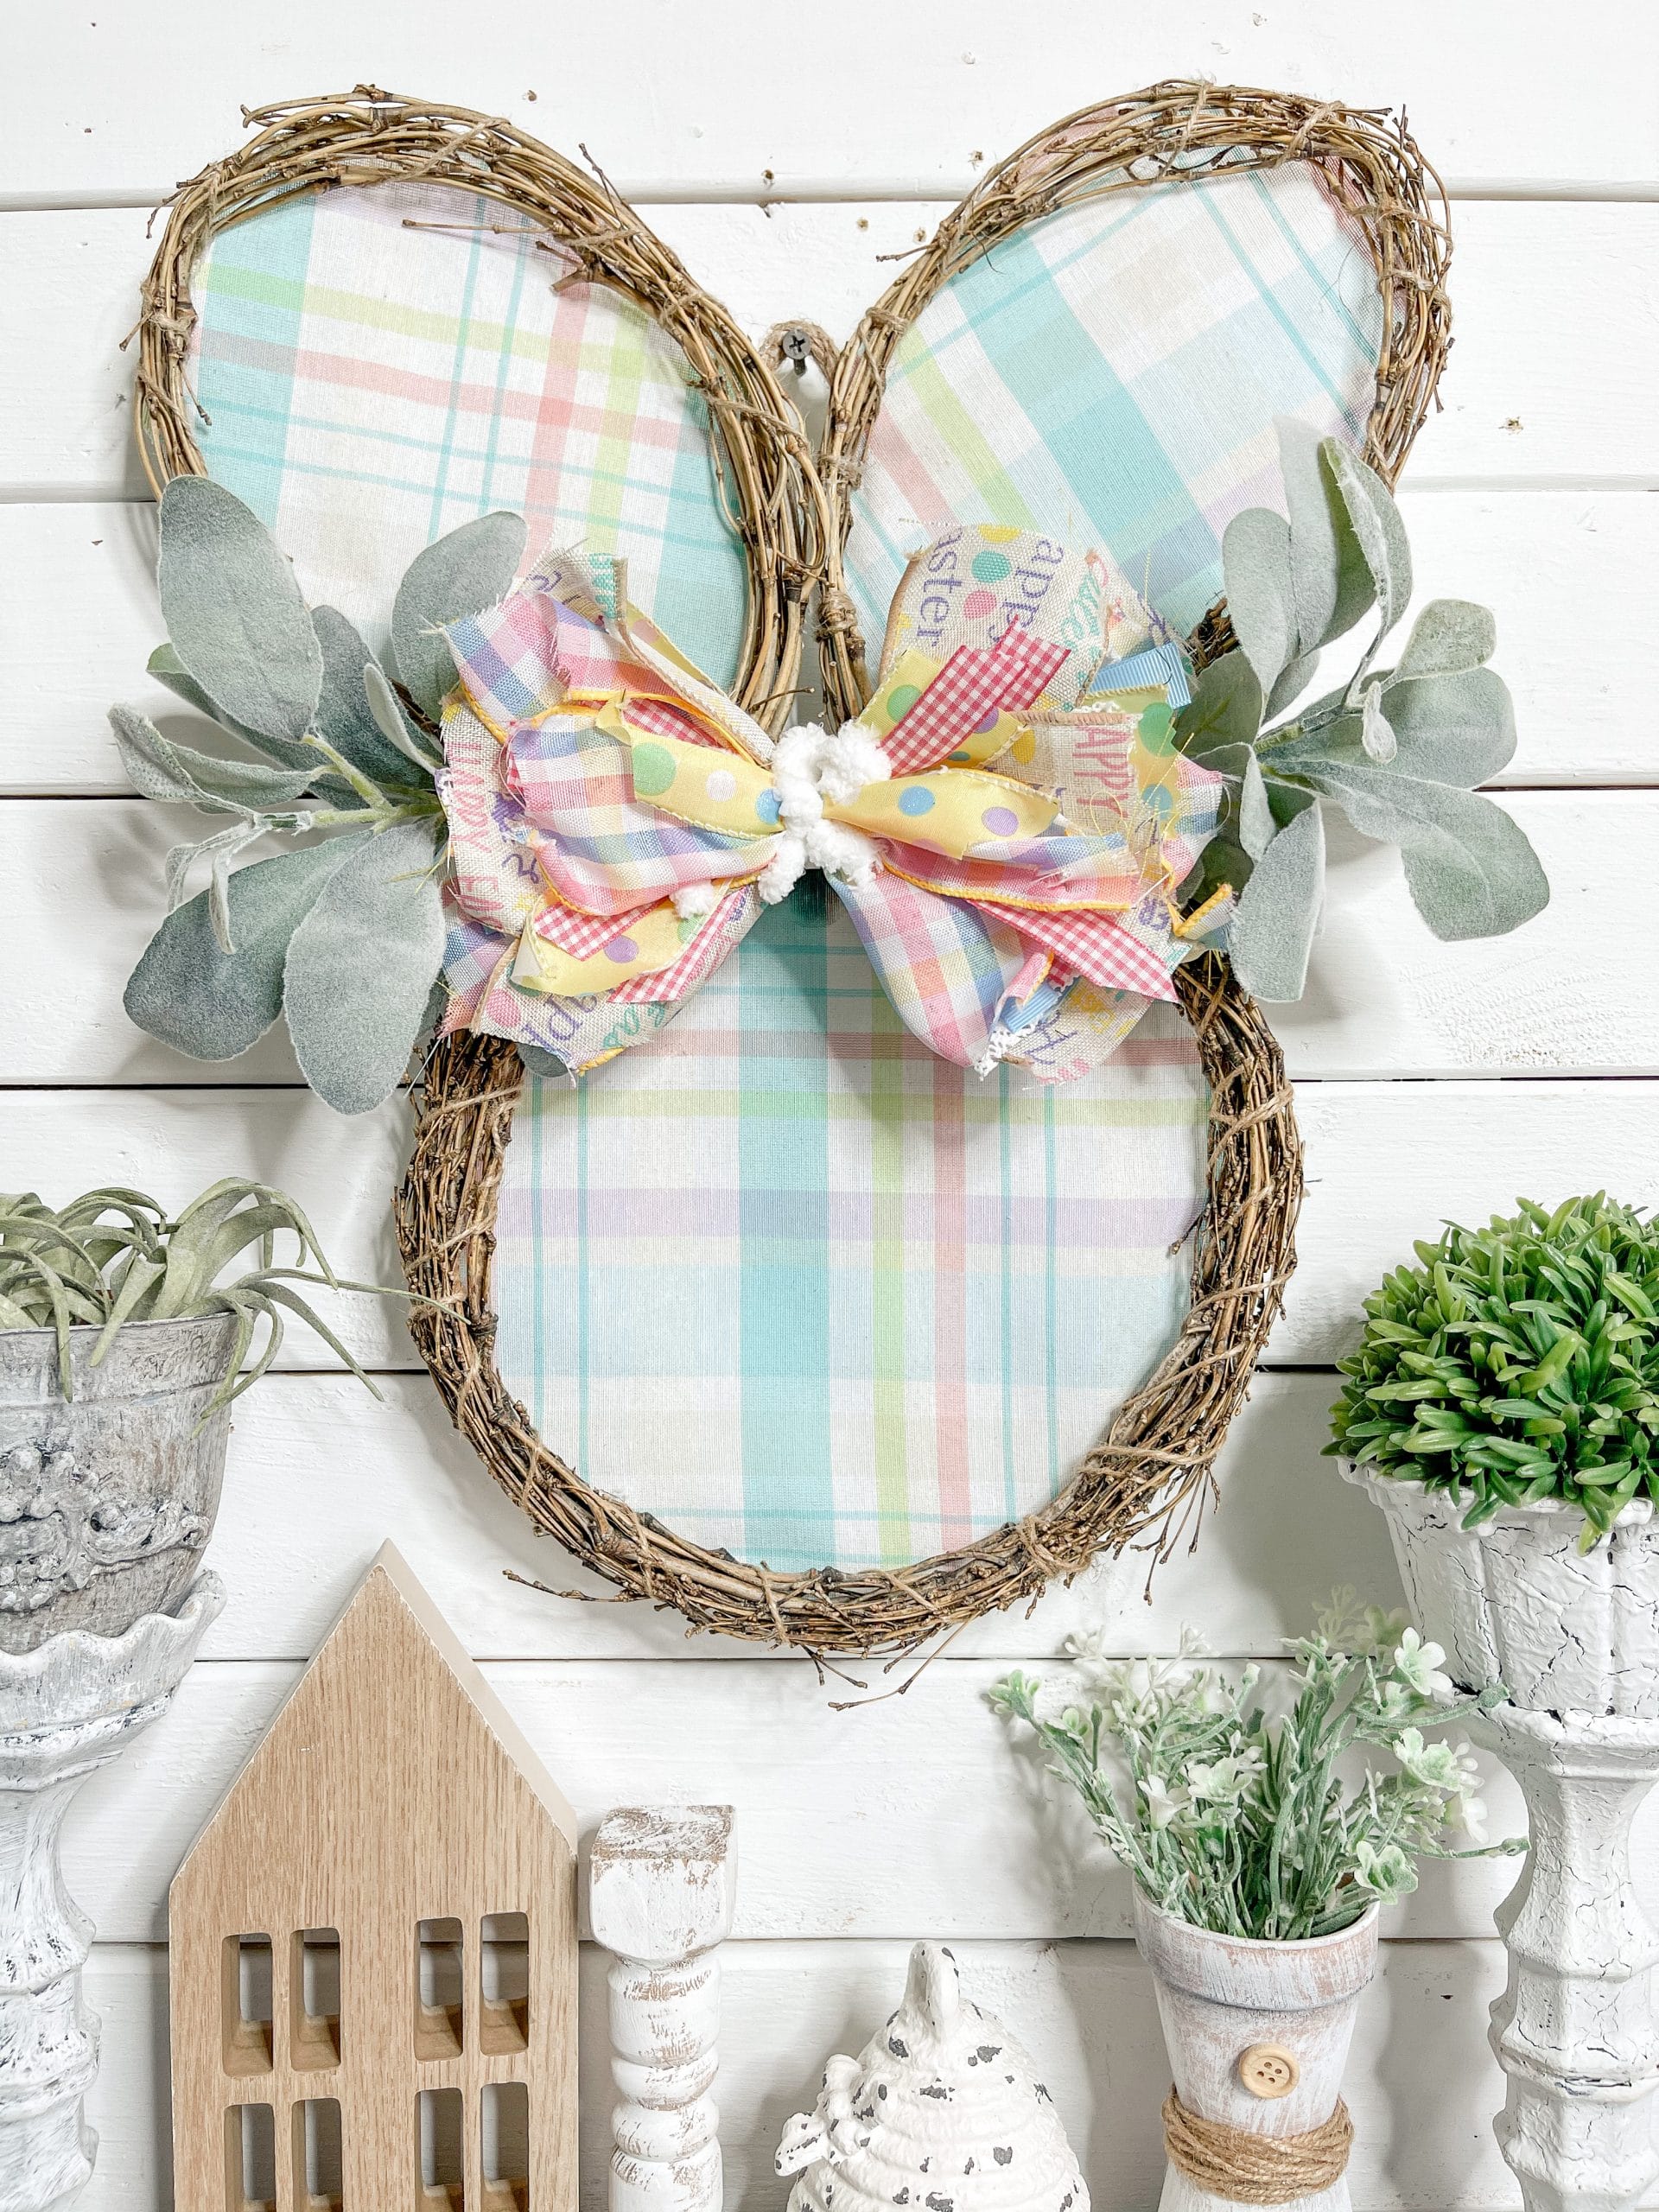 19 Adorable Easter Home Decor DIY Ideas